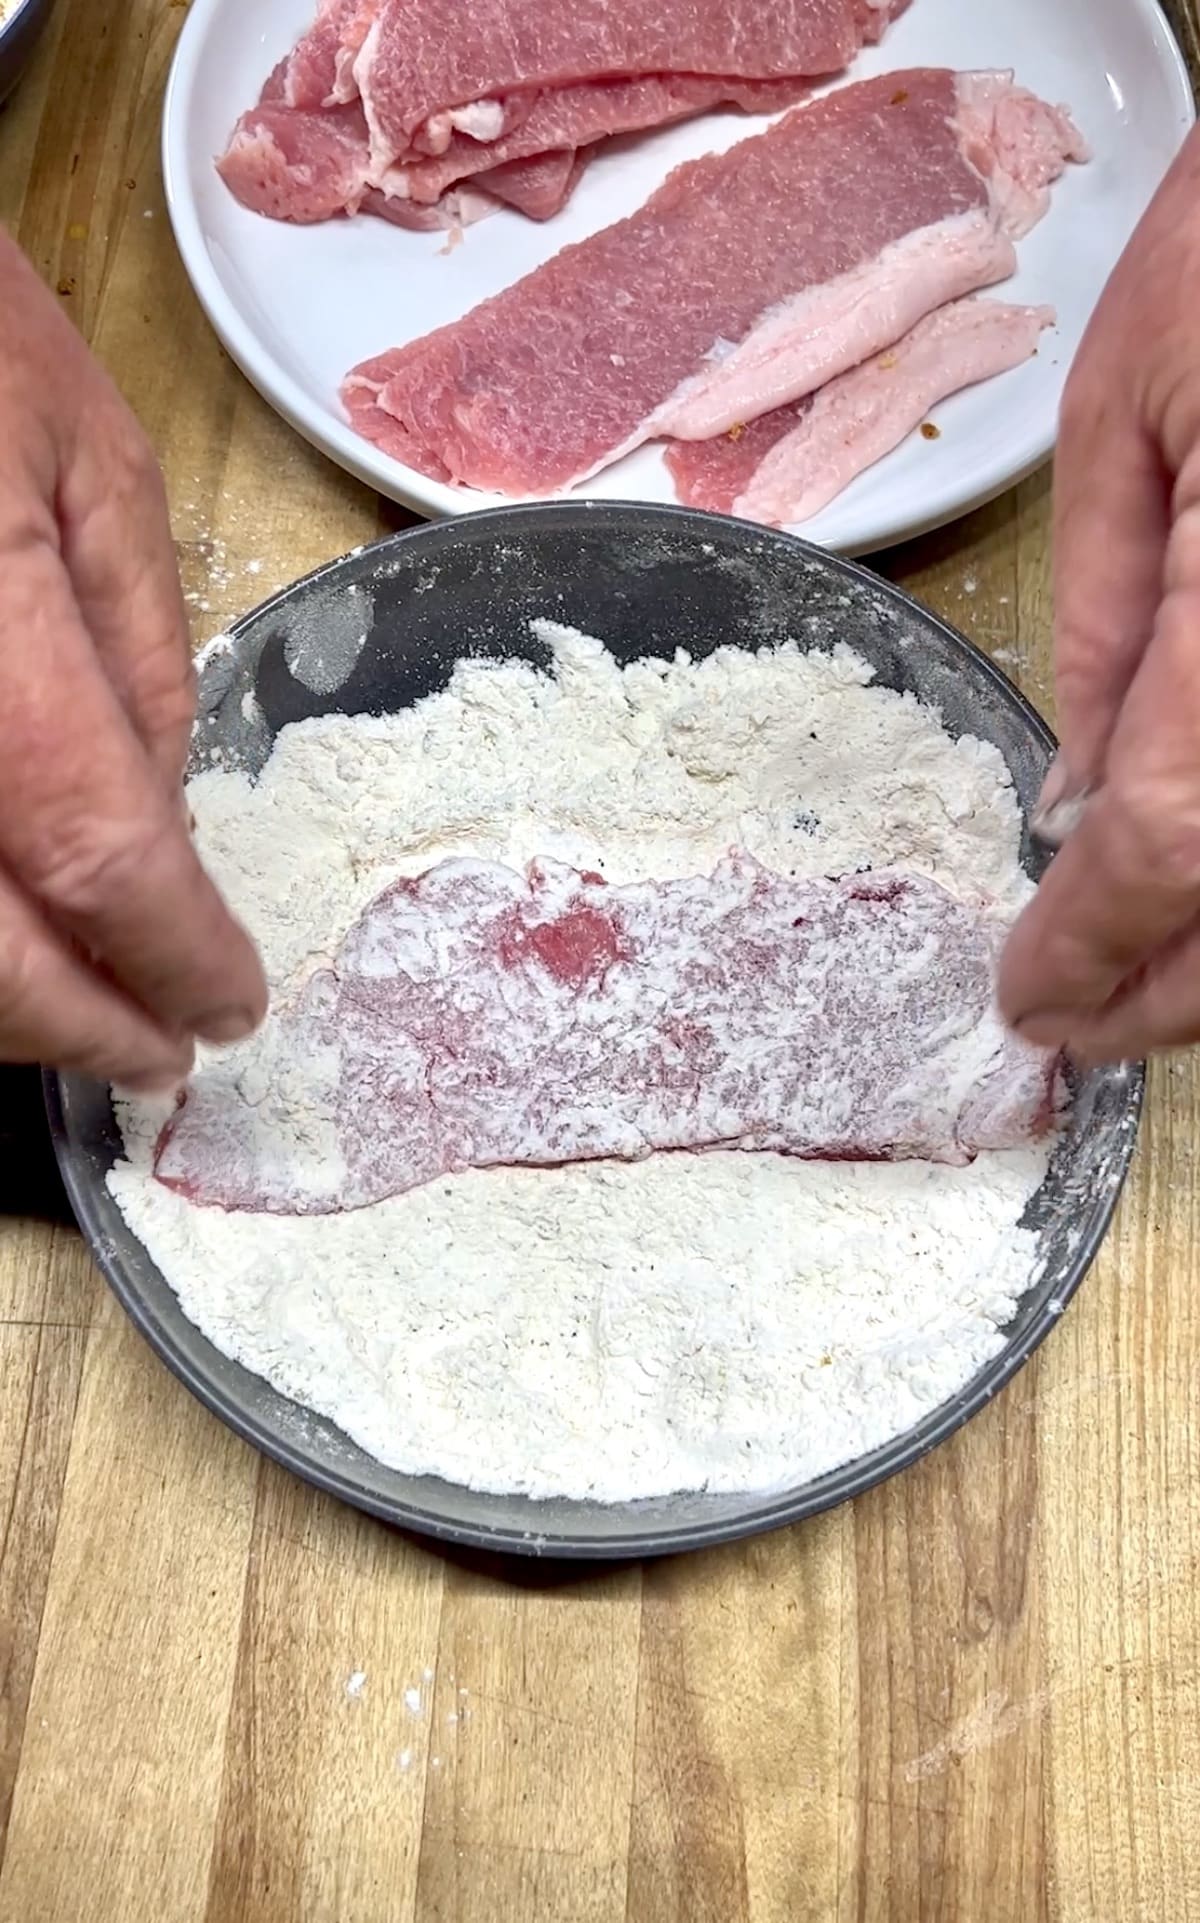 Dredging pork cutlets in flour. 